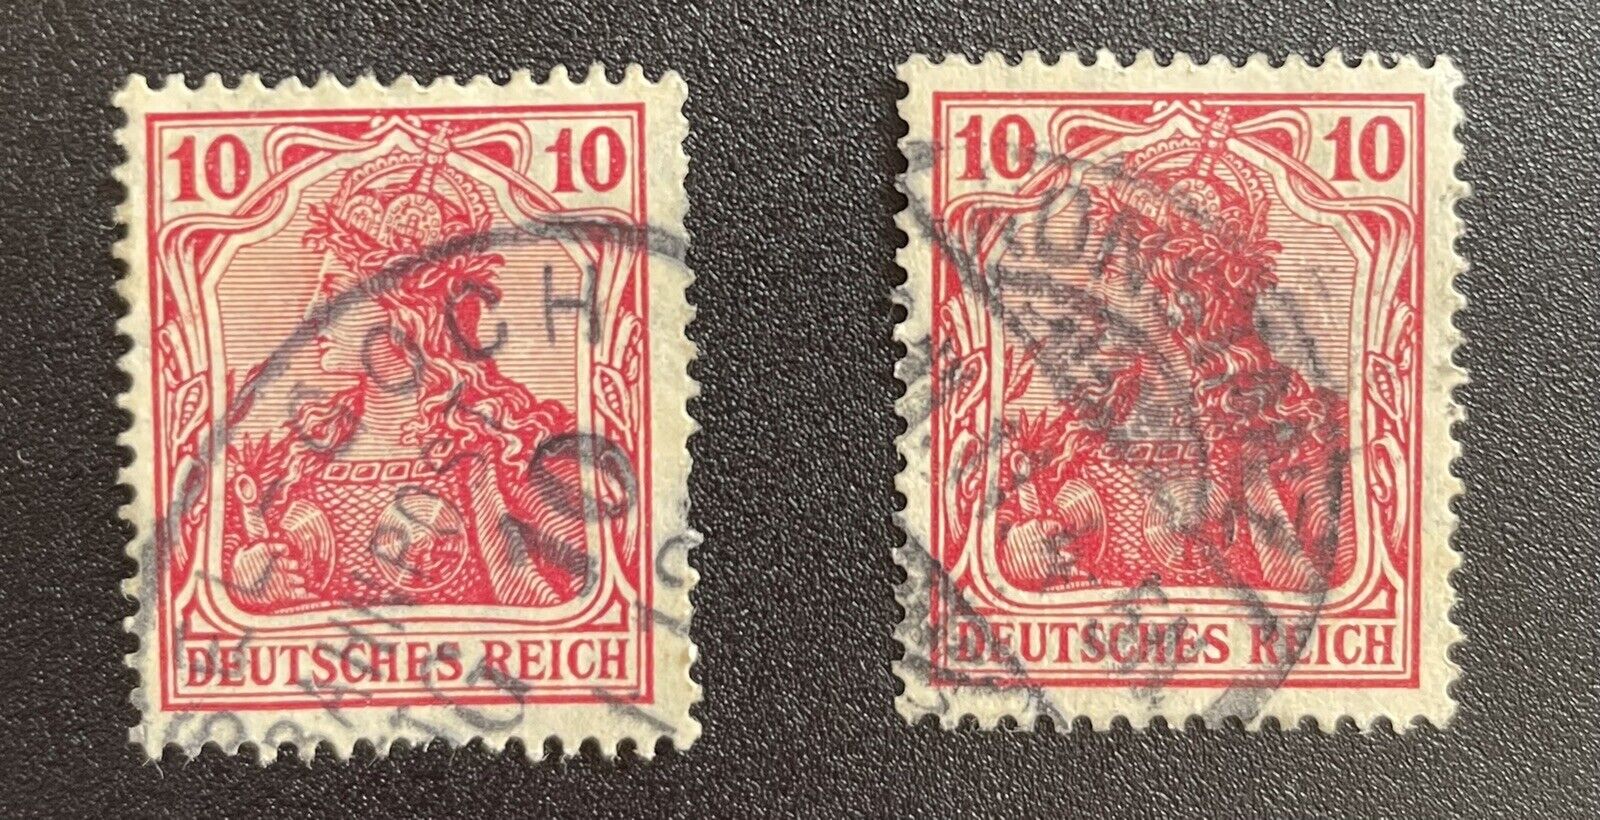 rare german stamps